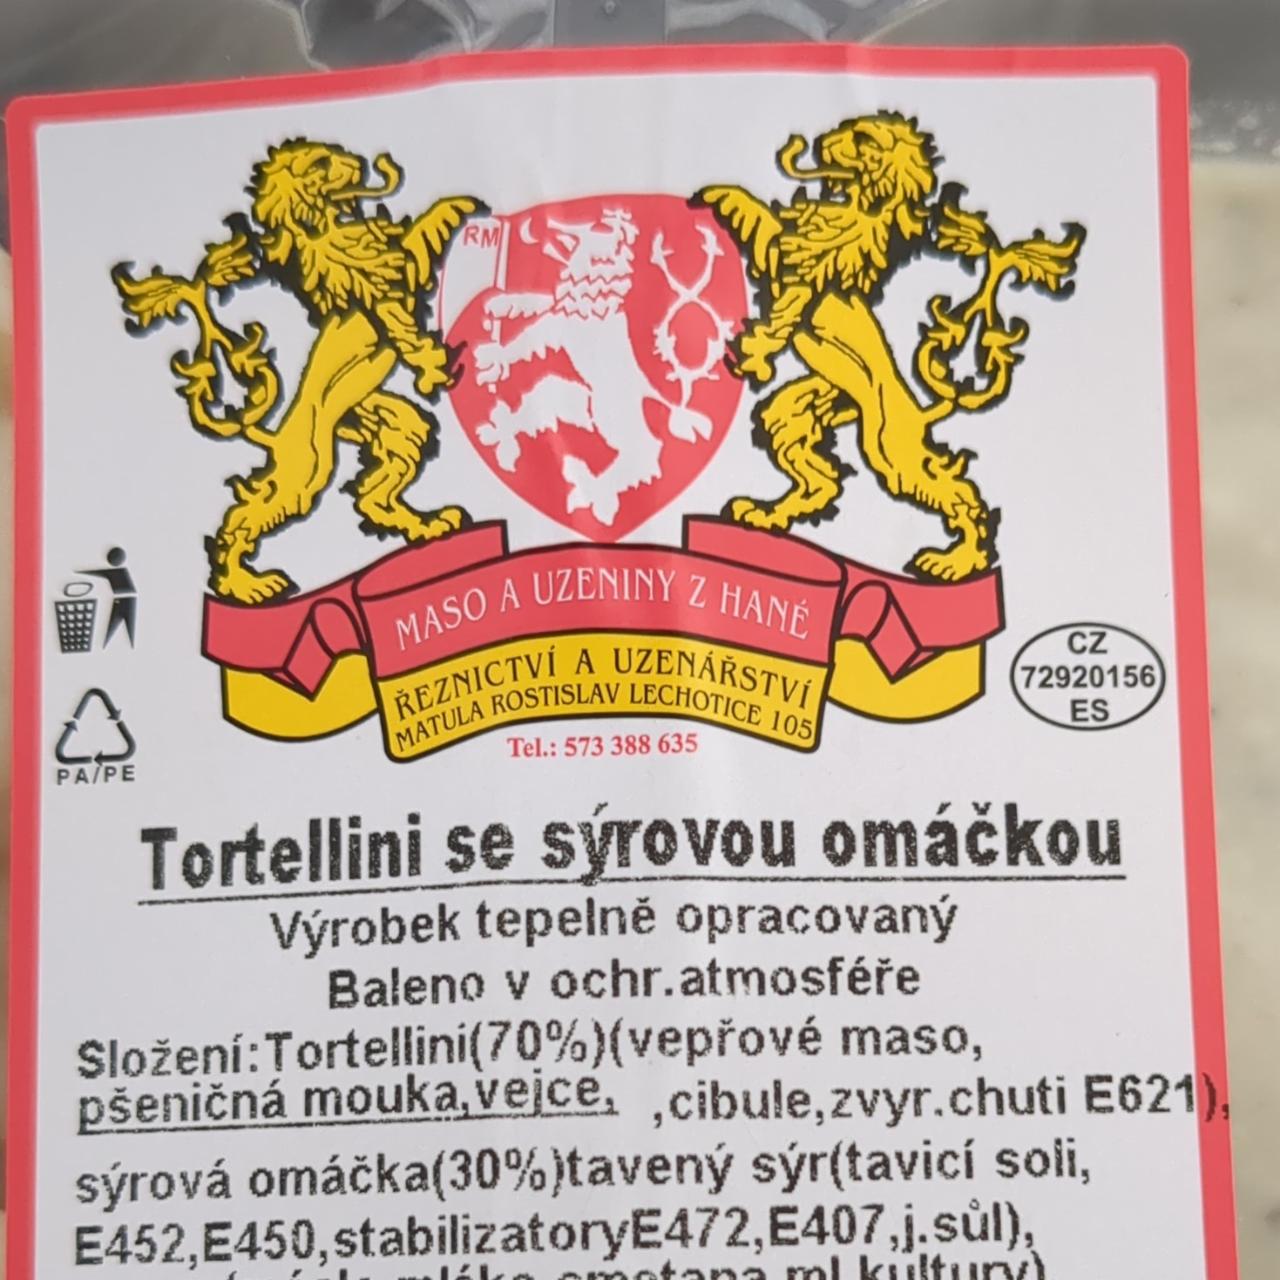 Fotografie - Tortellini se sýrovou omáčkou Řeznictví a uzenářství Rostislav Matula